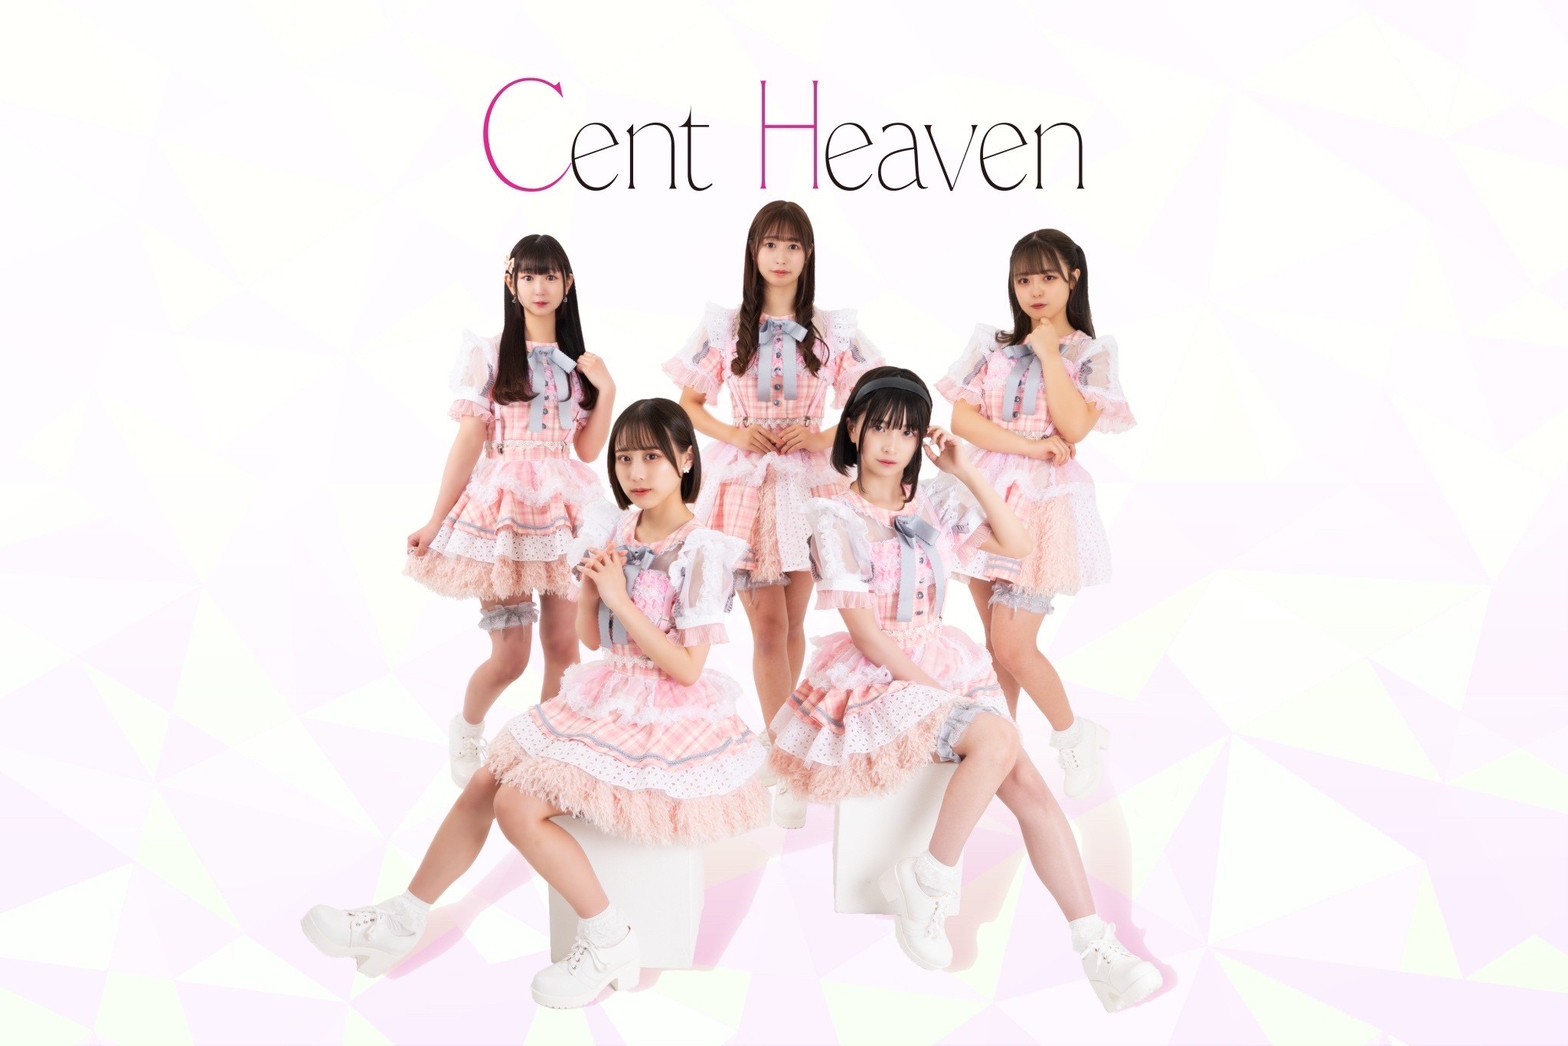 Cent Heaven